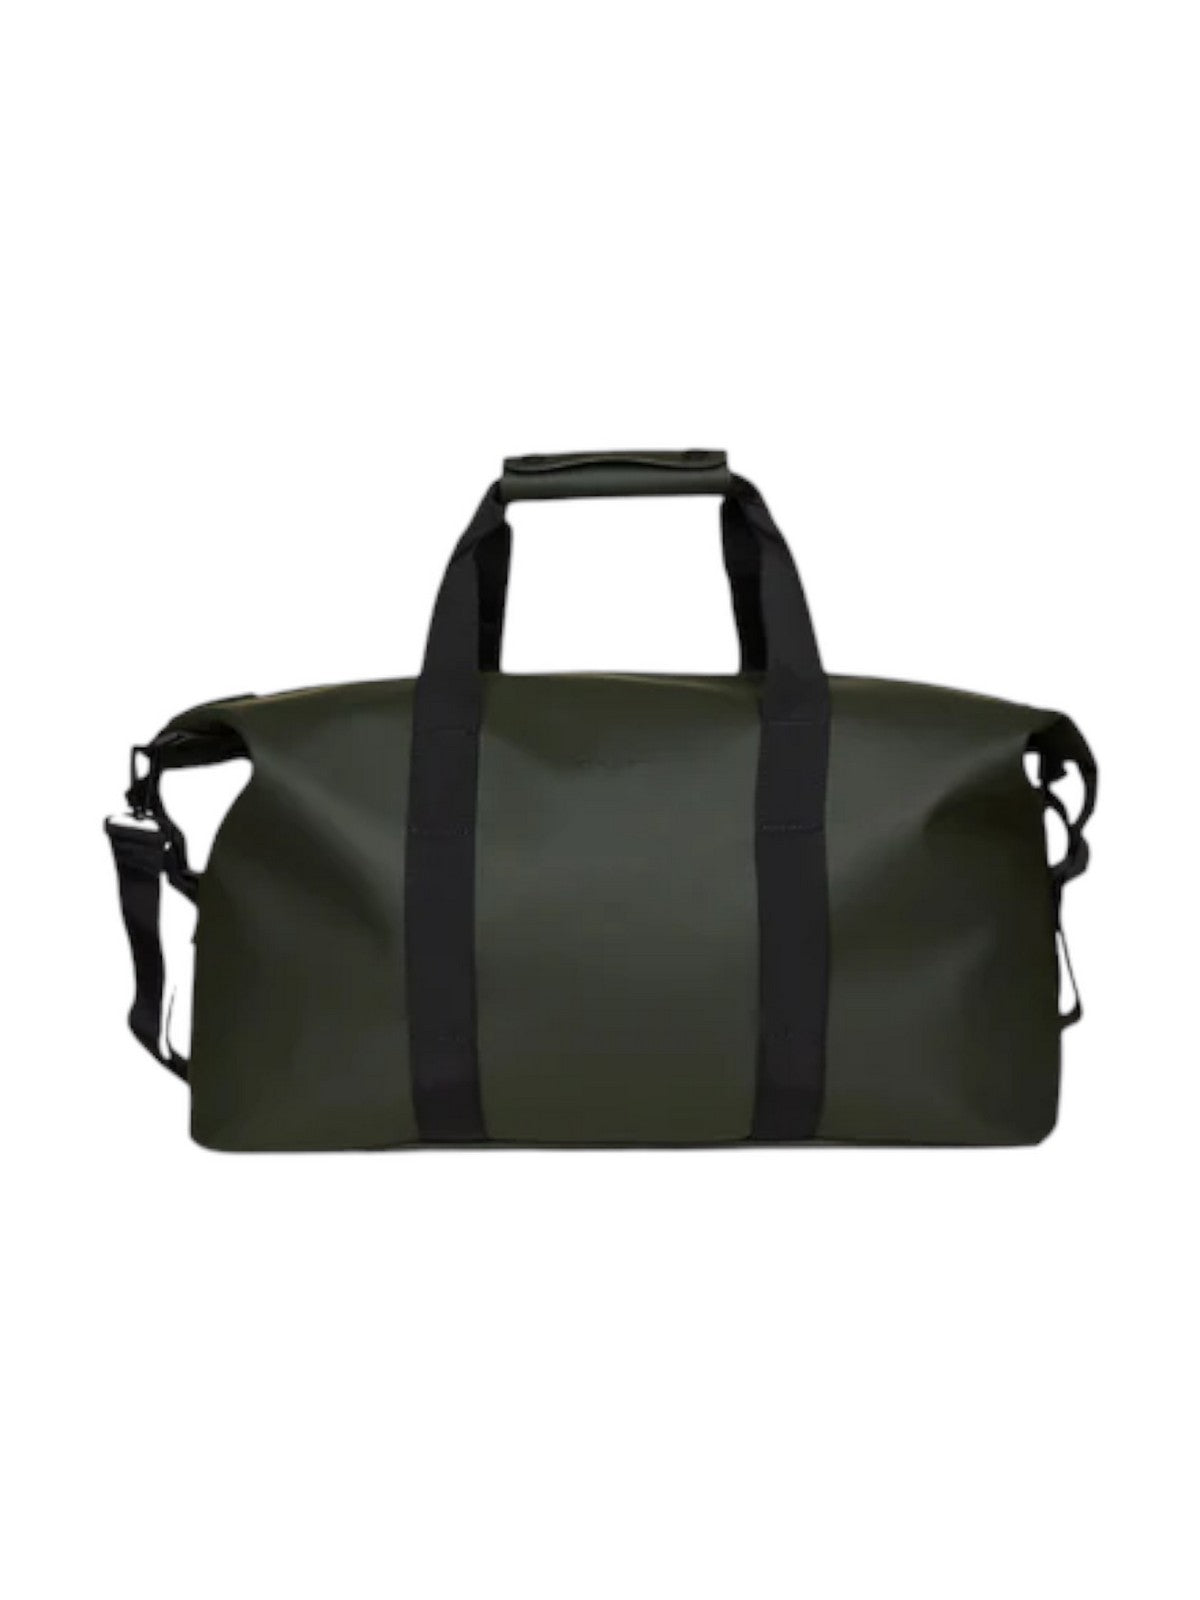 RAINS Bagages et Trolley Cases Unisex Adulte Hilo Weekend Bag W3 14200 03 Vert